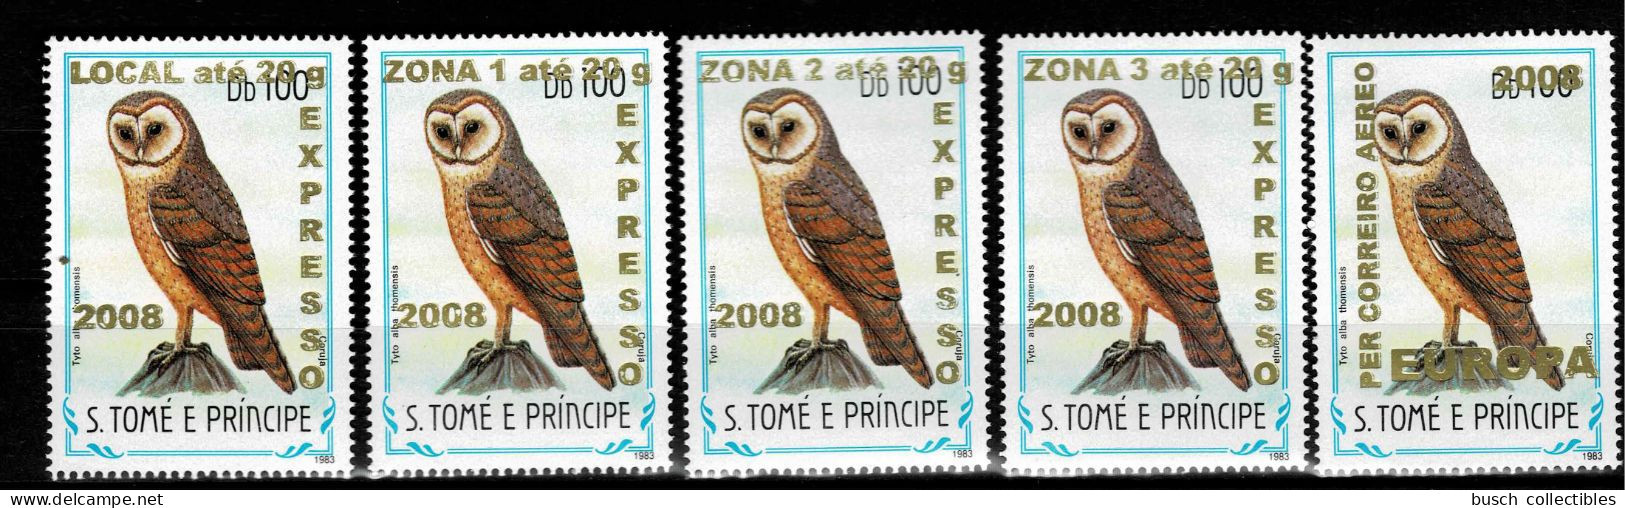 S. Tomé & Principe 2009 Mi. 3963 - 3966 + 3968 Oiseaux Birds Vögel Chouette Eule Owl Faune Fauna Overprint Surcharge 5v. - Sao Tome And Principe